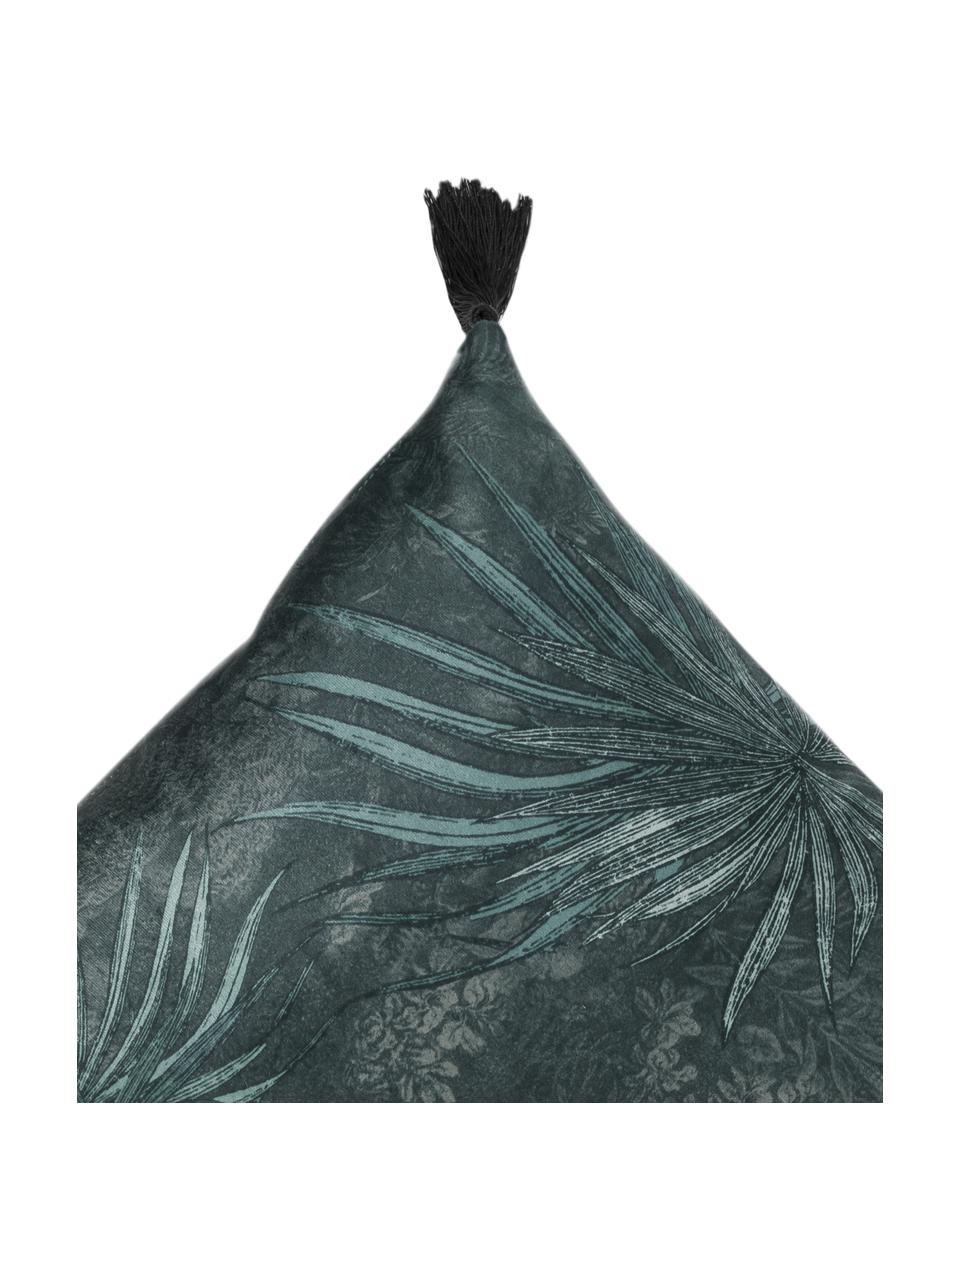 Cuscino con motivo a foglie e nappe Jangala, Retro: cotone, Tonalità blu, Larg. 50 x Lung. 50 cm